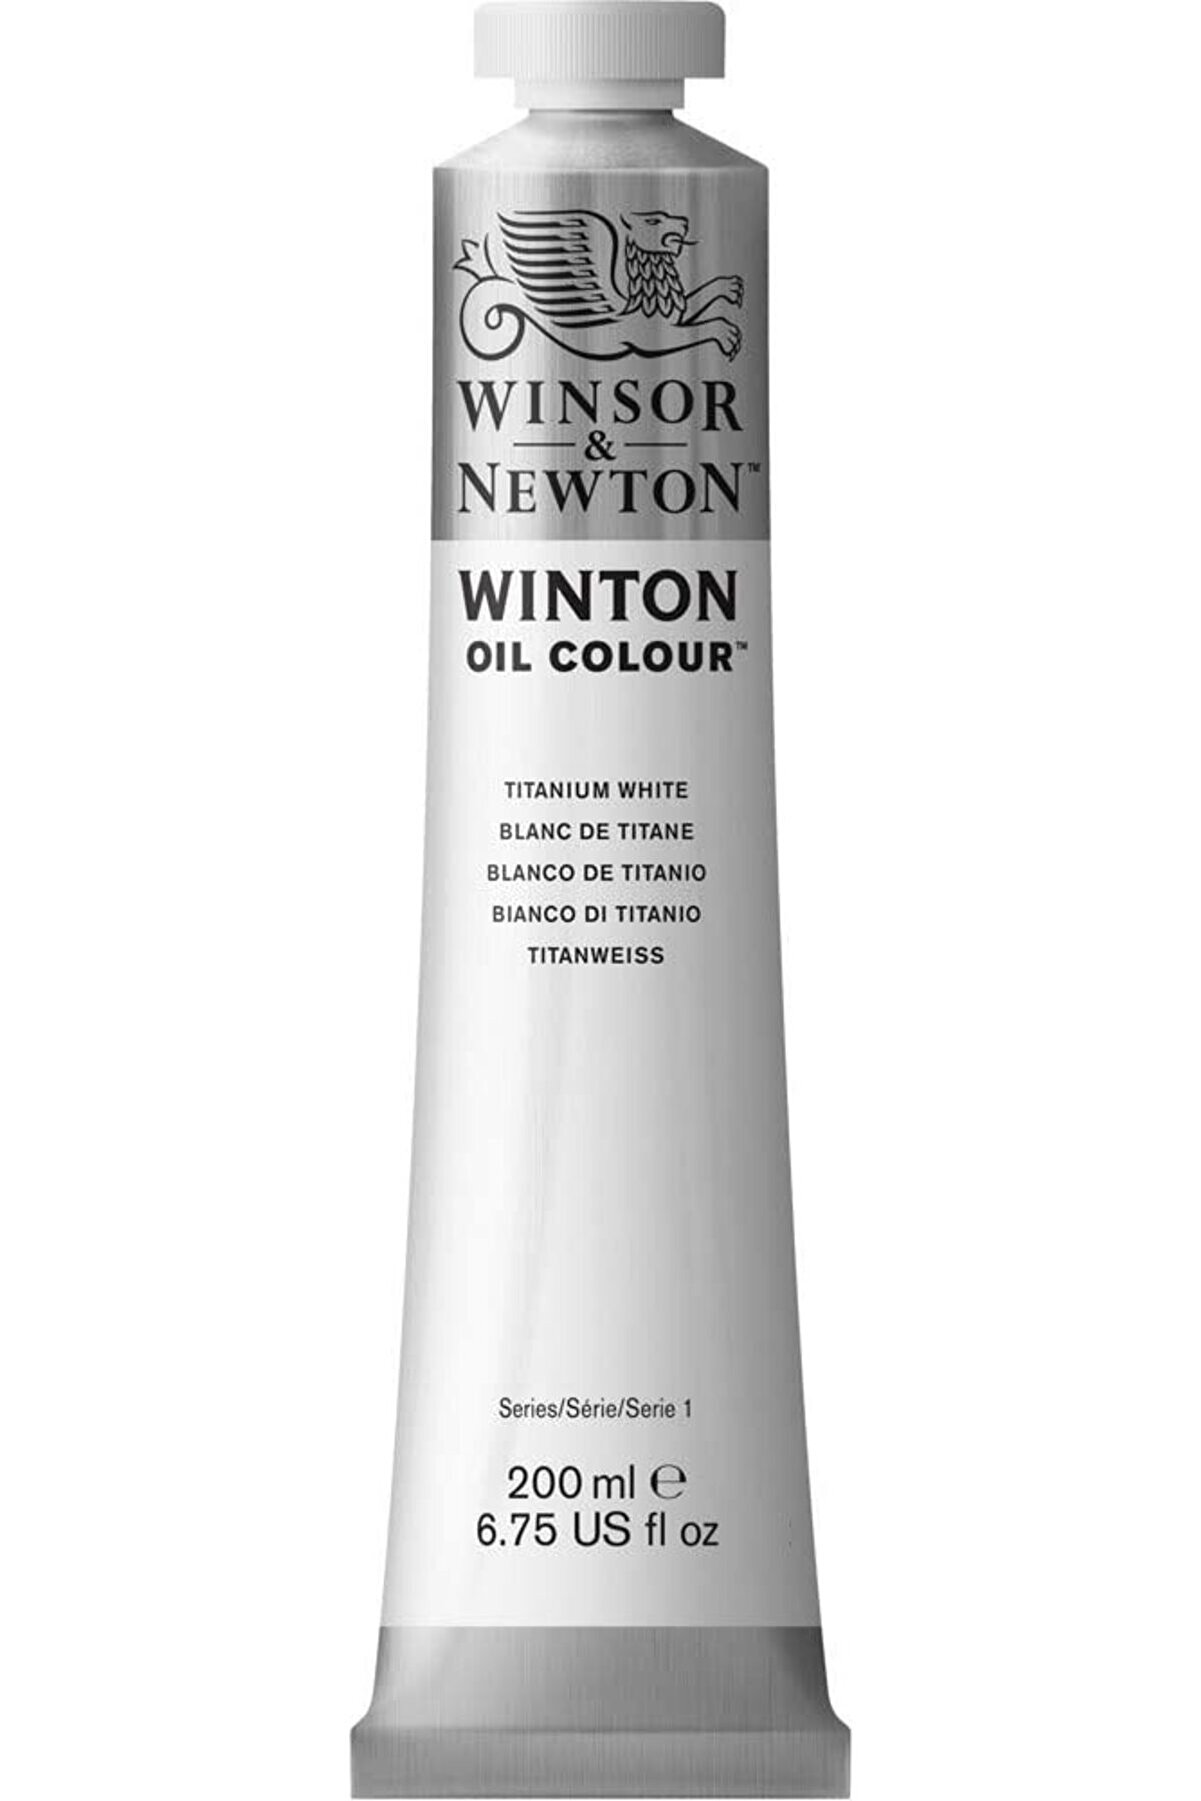 Winsor Newton Winton Yağlı Boya 200ml Titanium White / 644